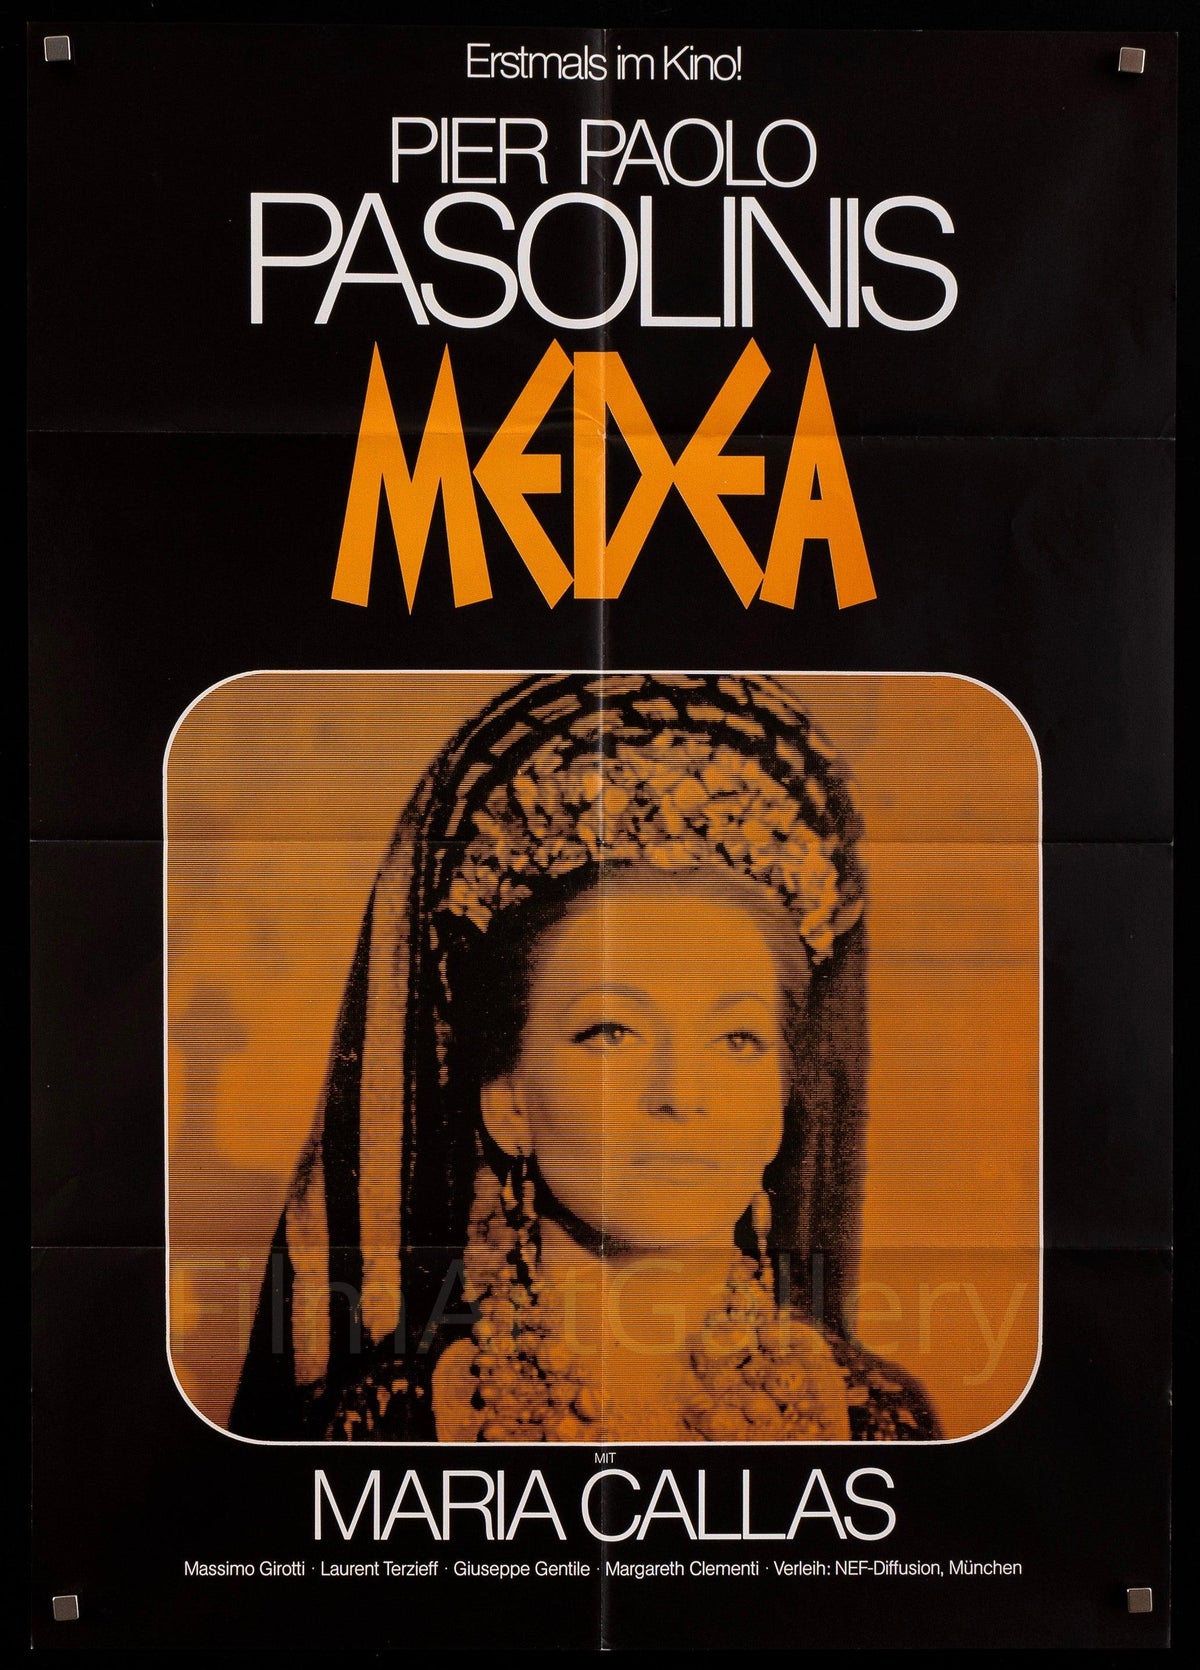 Medea German A1 (23x33) Original Vintage Movie Poster